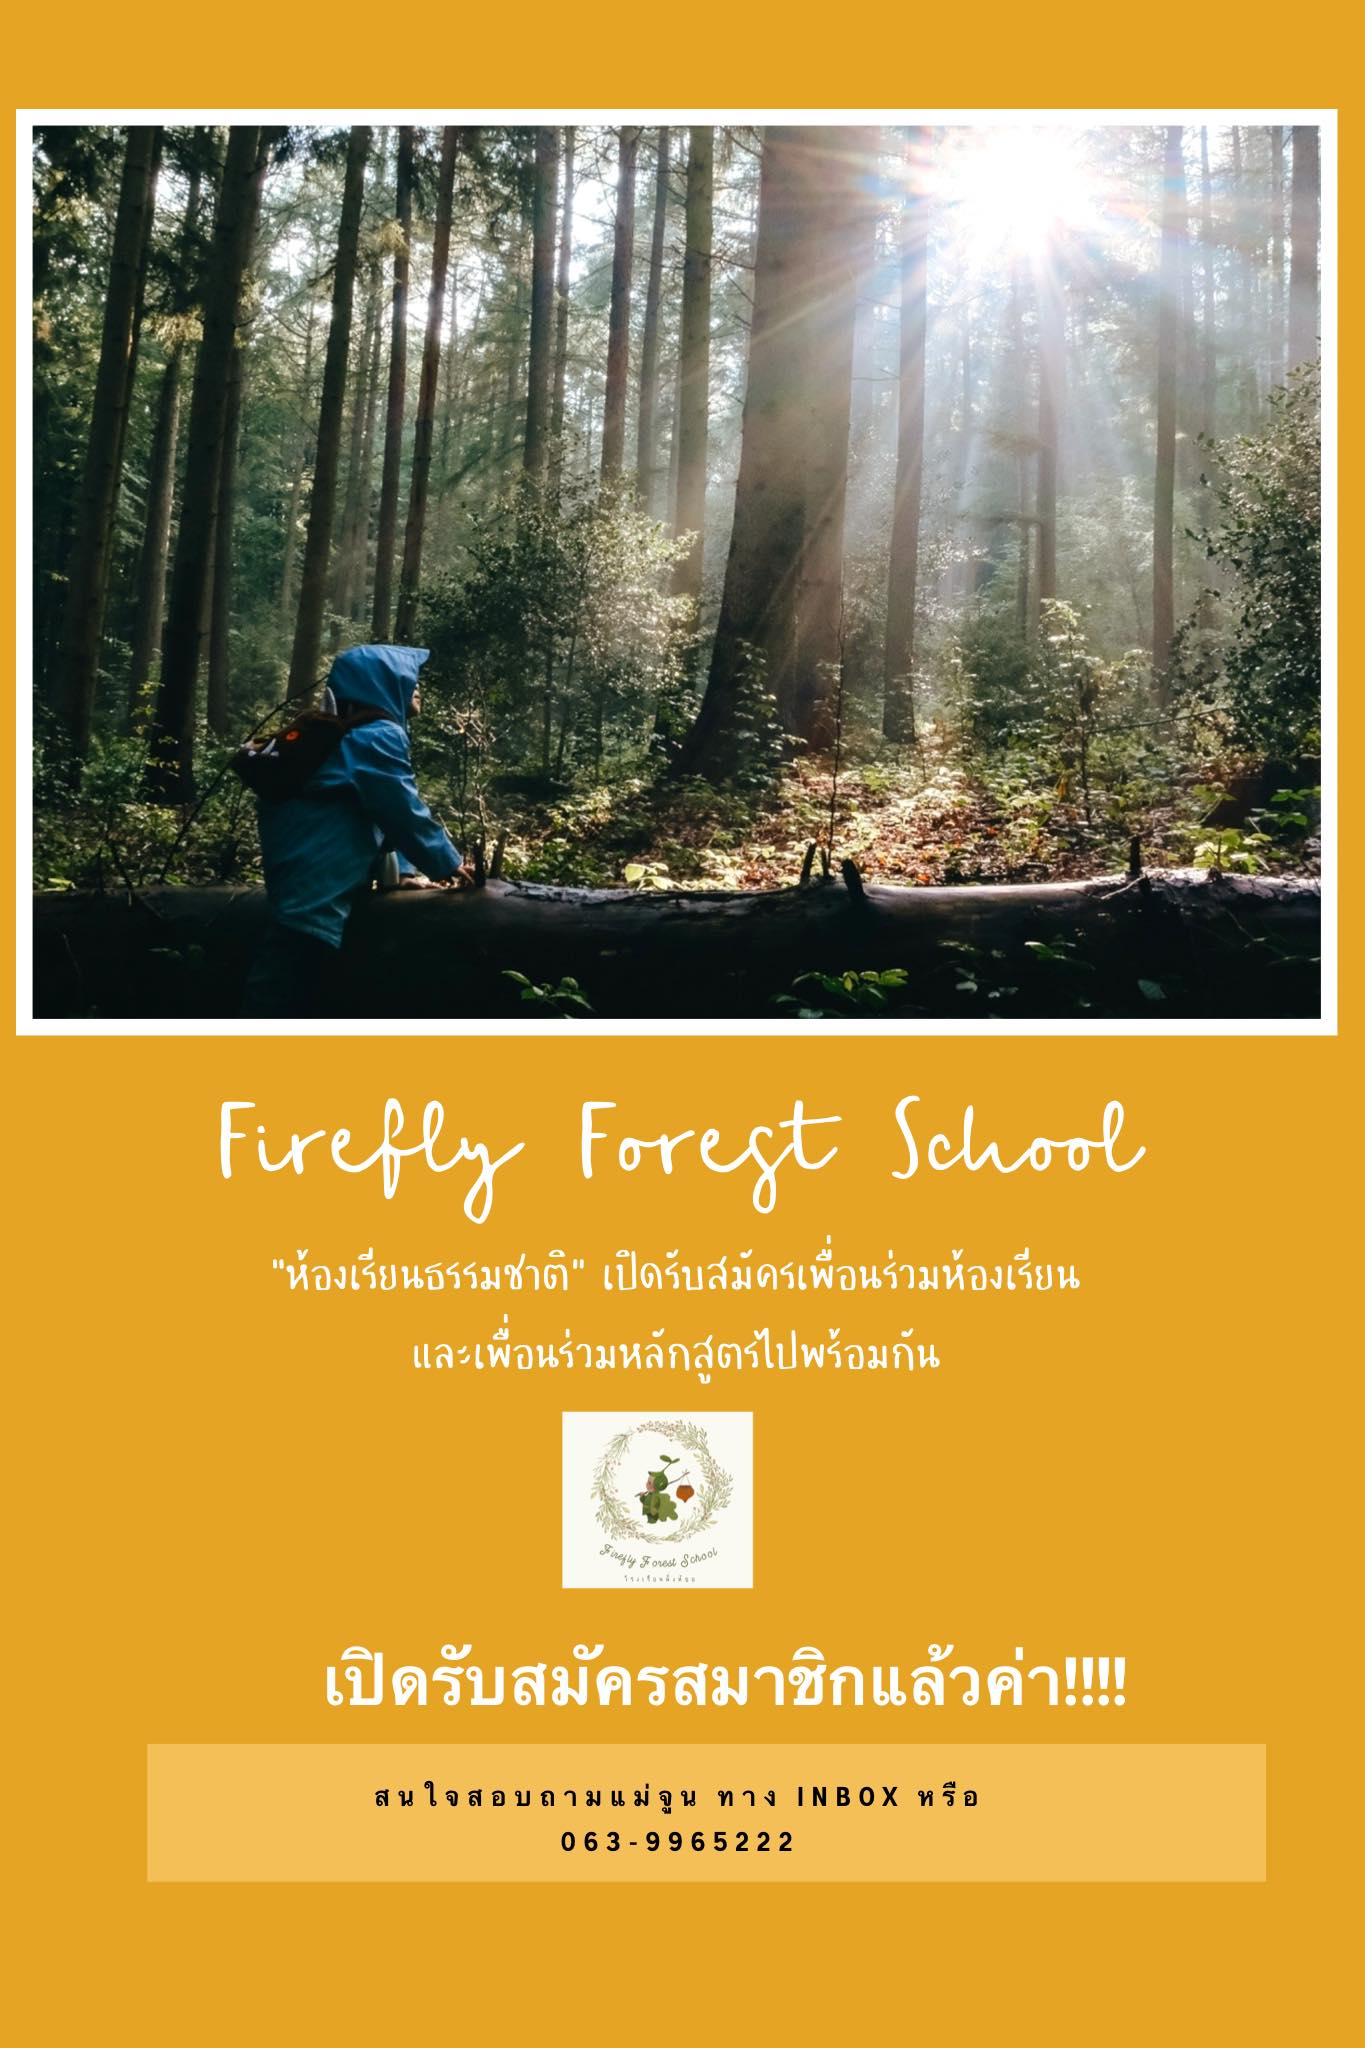 โรงเรียนหิ่งห้อย_ห้องเรียนธรรมชาติ_Firefly Forest School_Bangkok_Thailand (4)